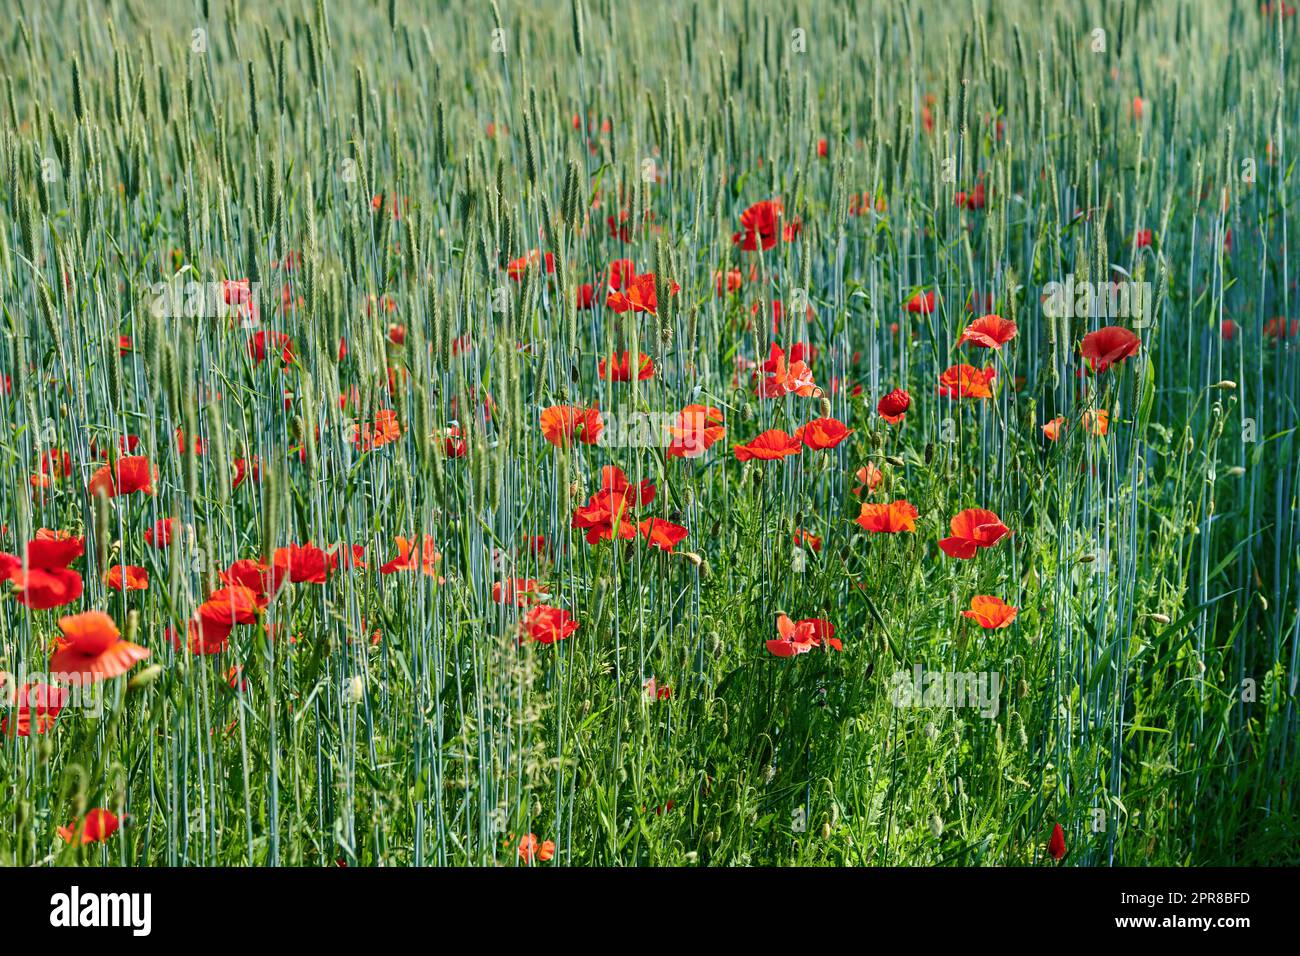 Feld mit roten Mohnblumen, das im Sommer an einem sonnigen Tag im Freien auf einem grünen Weizenfeld wächst. Unkultivierte Wildblüten in einer bunten, überwucherten Landschaft einer Wiese mit Kopierraum-Hintergrund Stockfoto